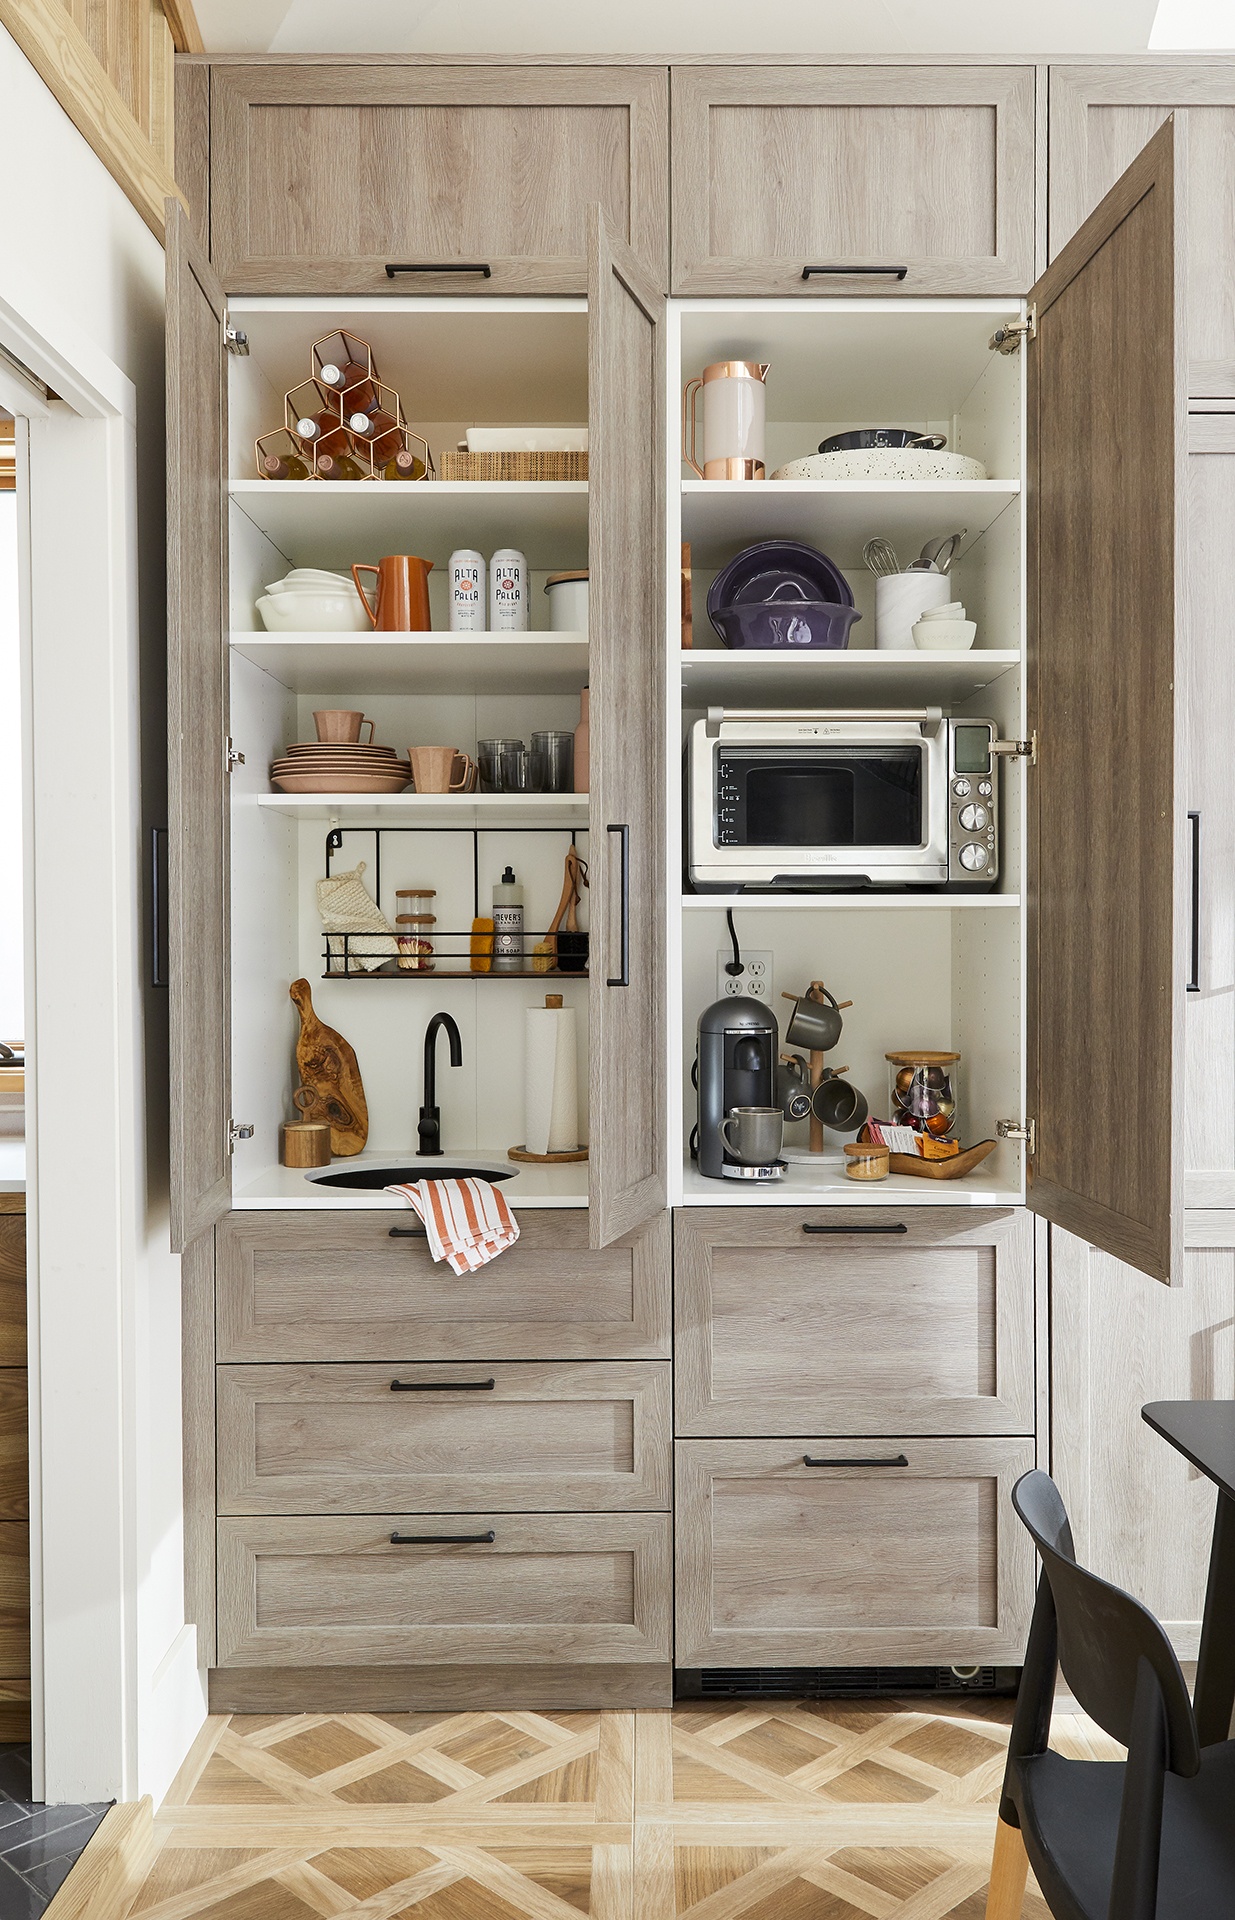 5 Appliance Garage Ideas for a Clutter-Free Kitchen - SemiStories